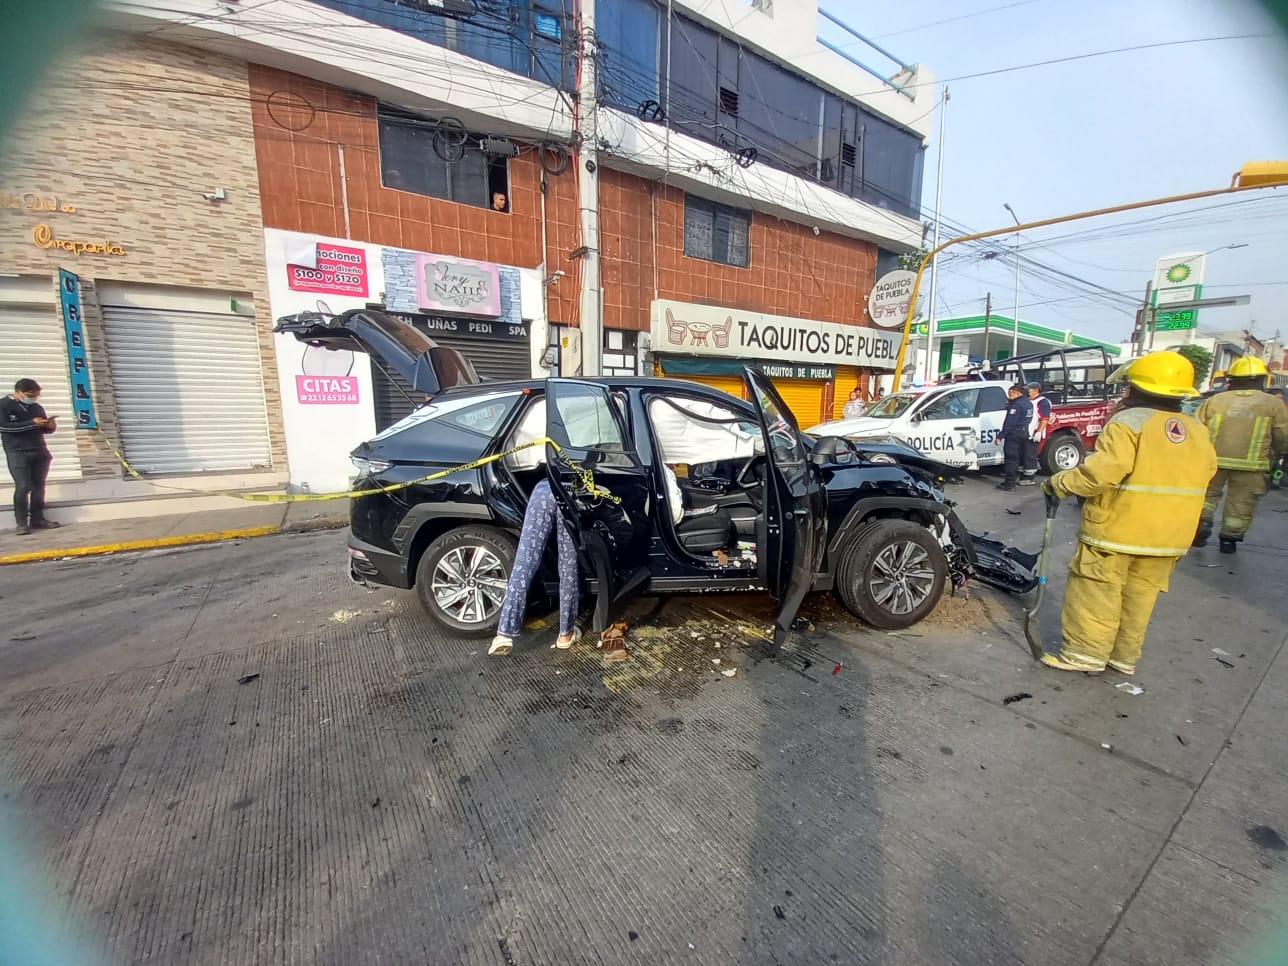 Patrulla estatal y vehículo particular chocan en Puebla; hay un herido